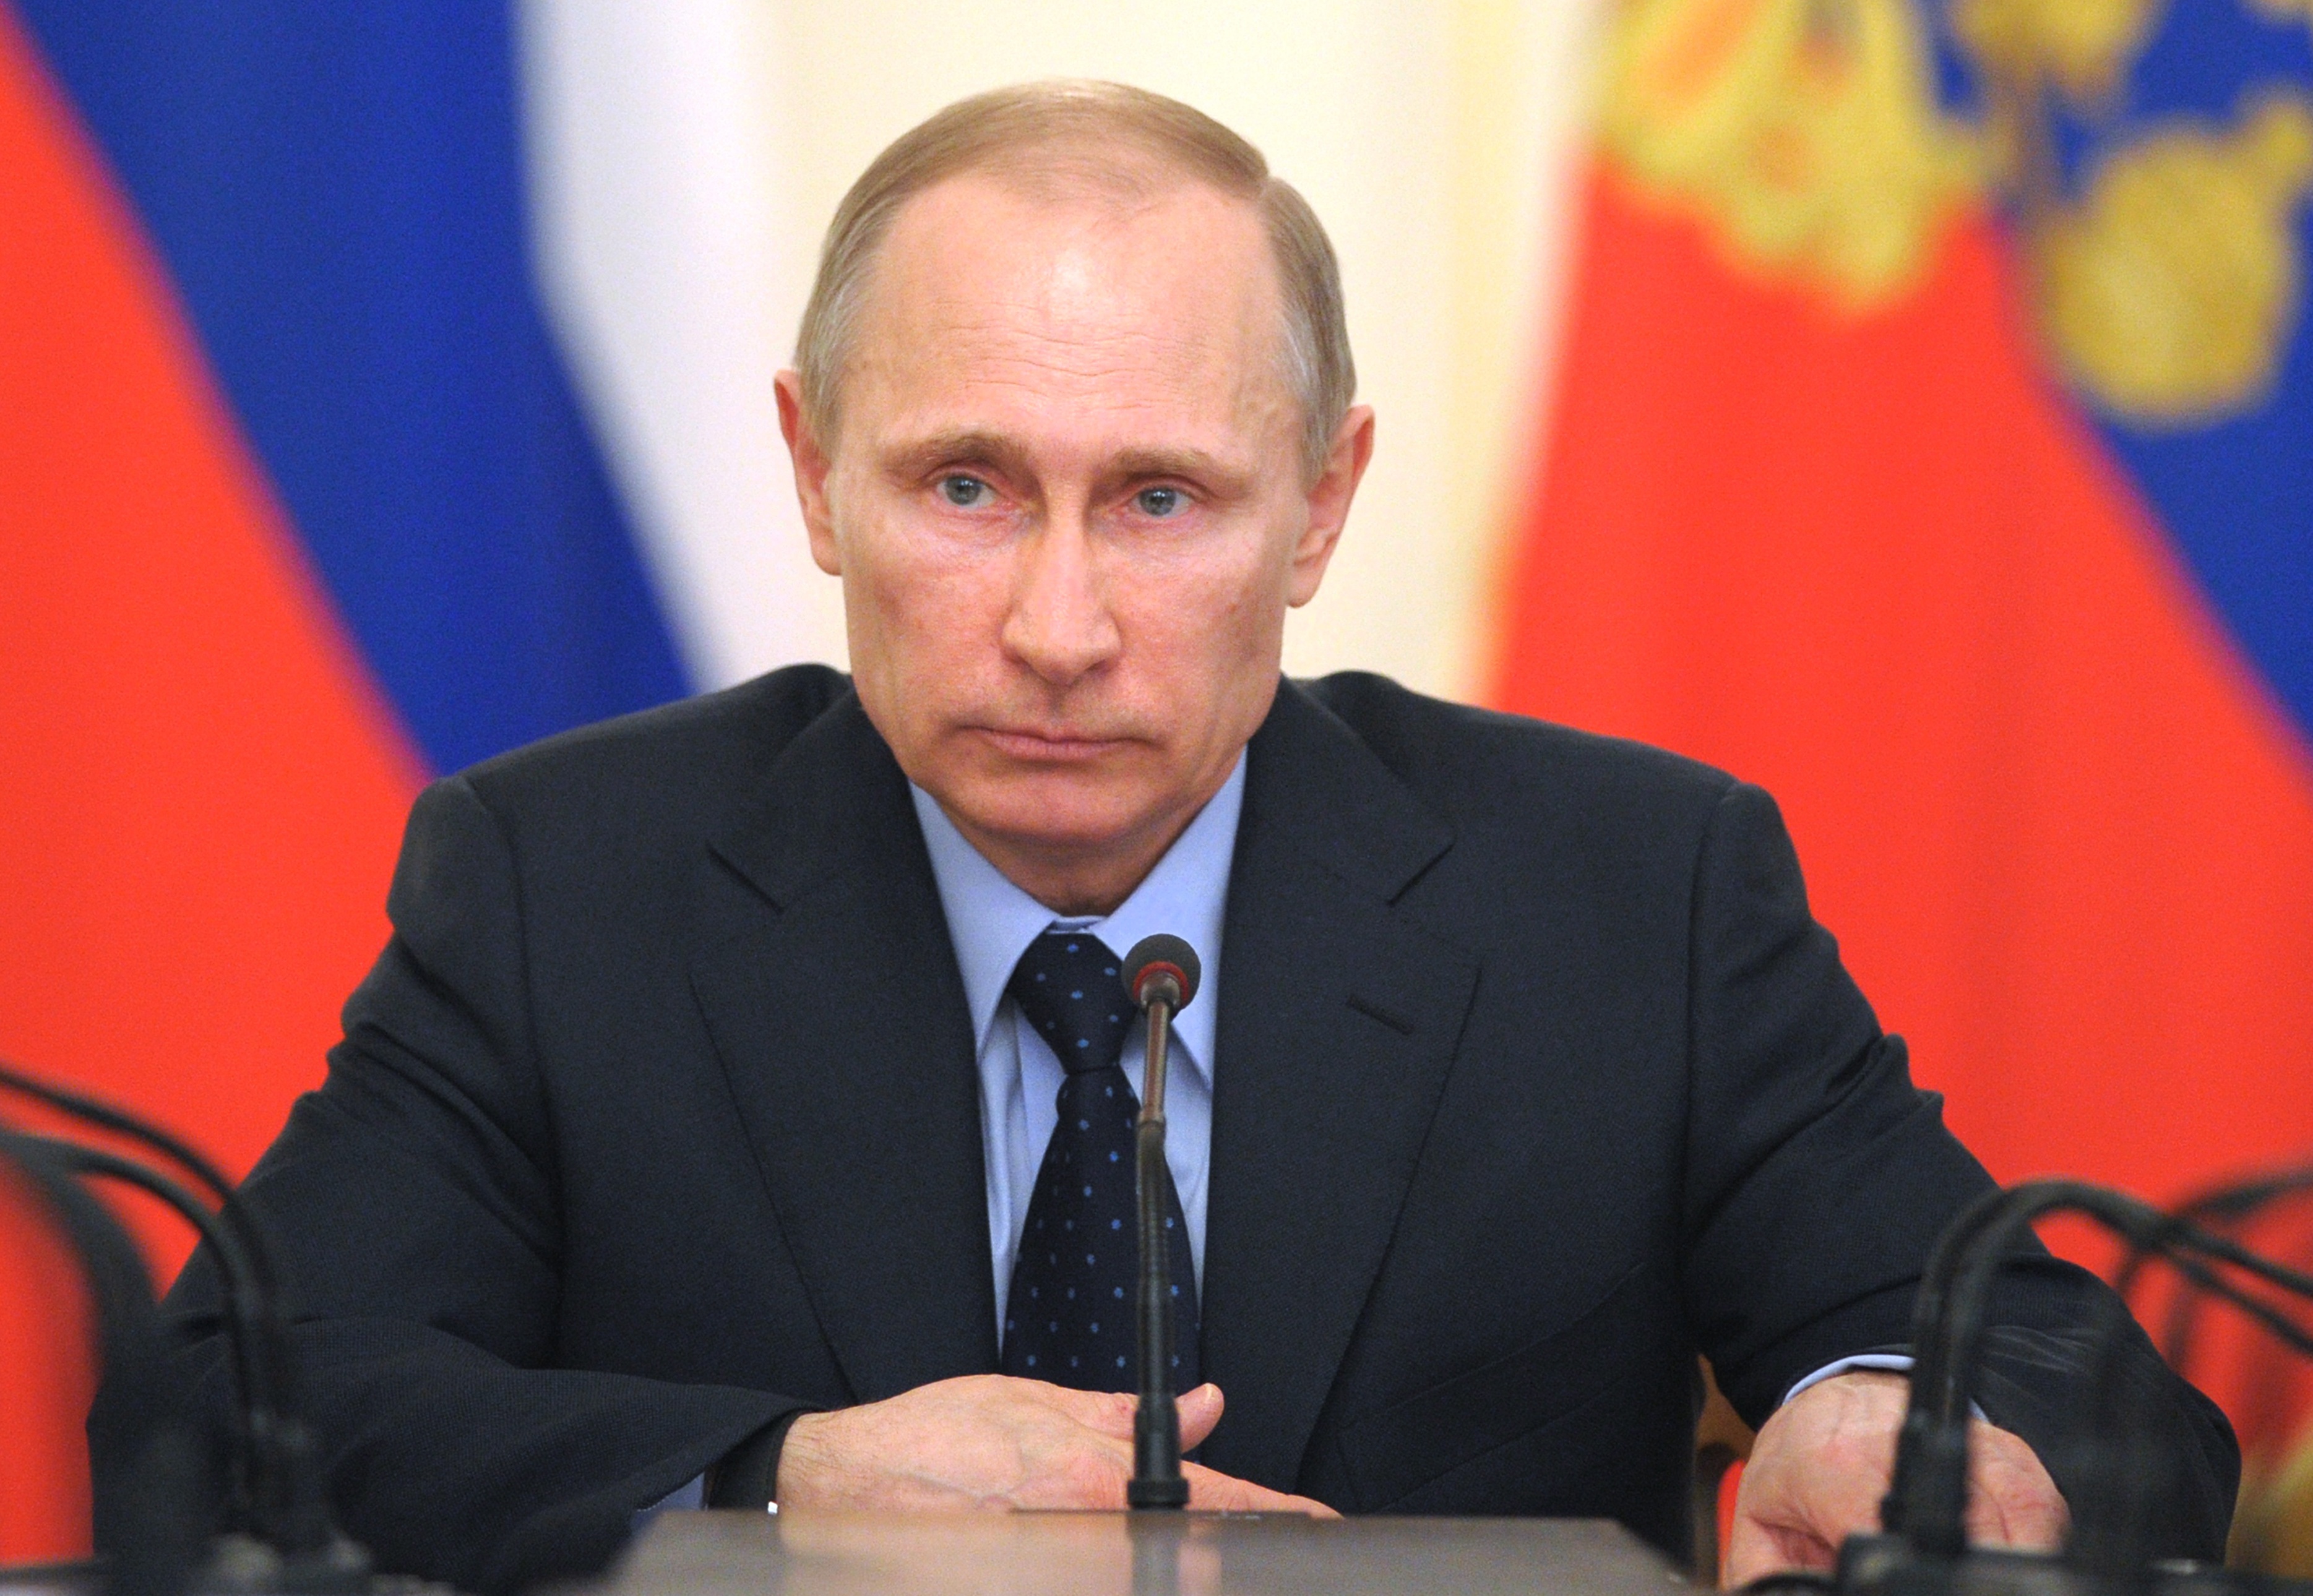 Thu nhập của Tổng thống Nga sẽ được công bố trong tuần này